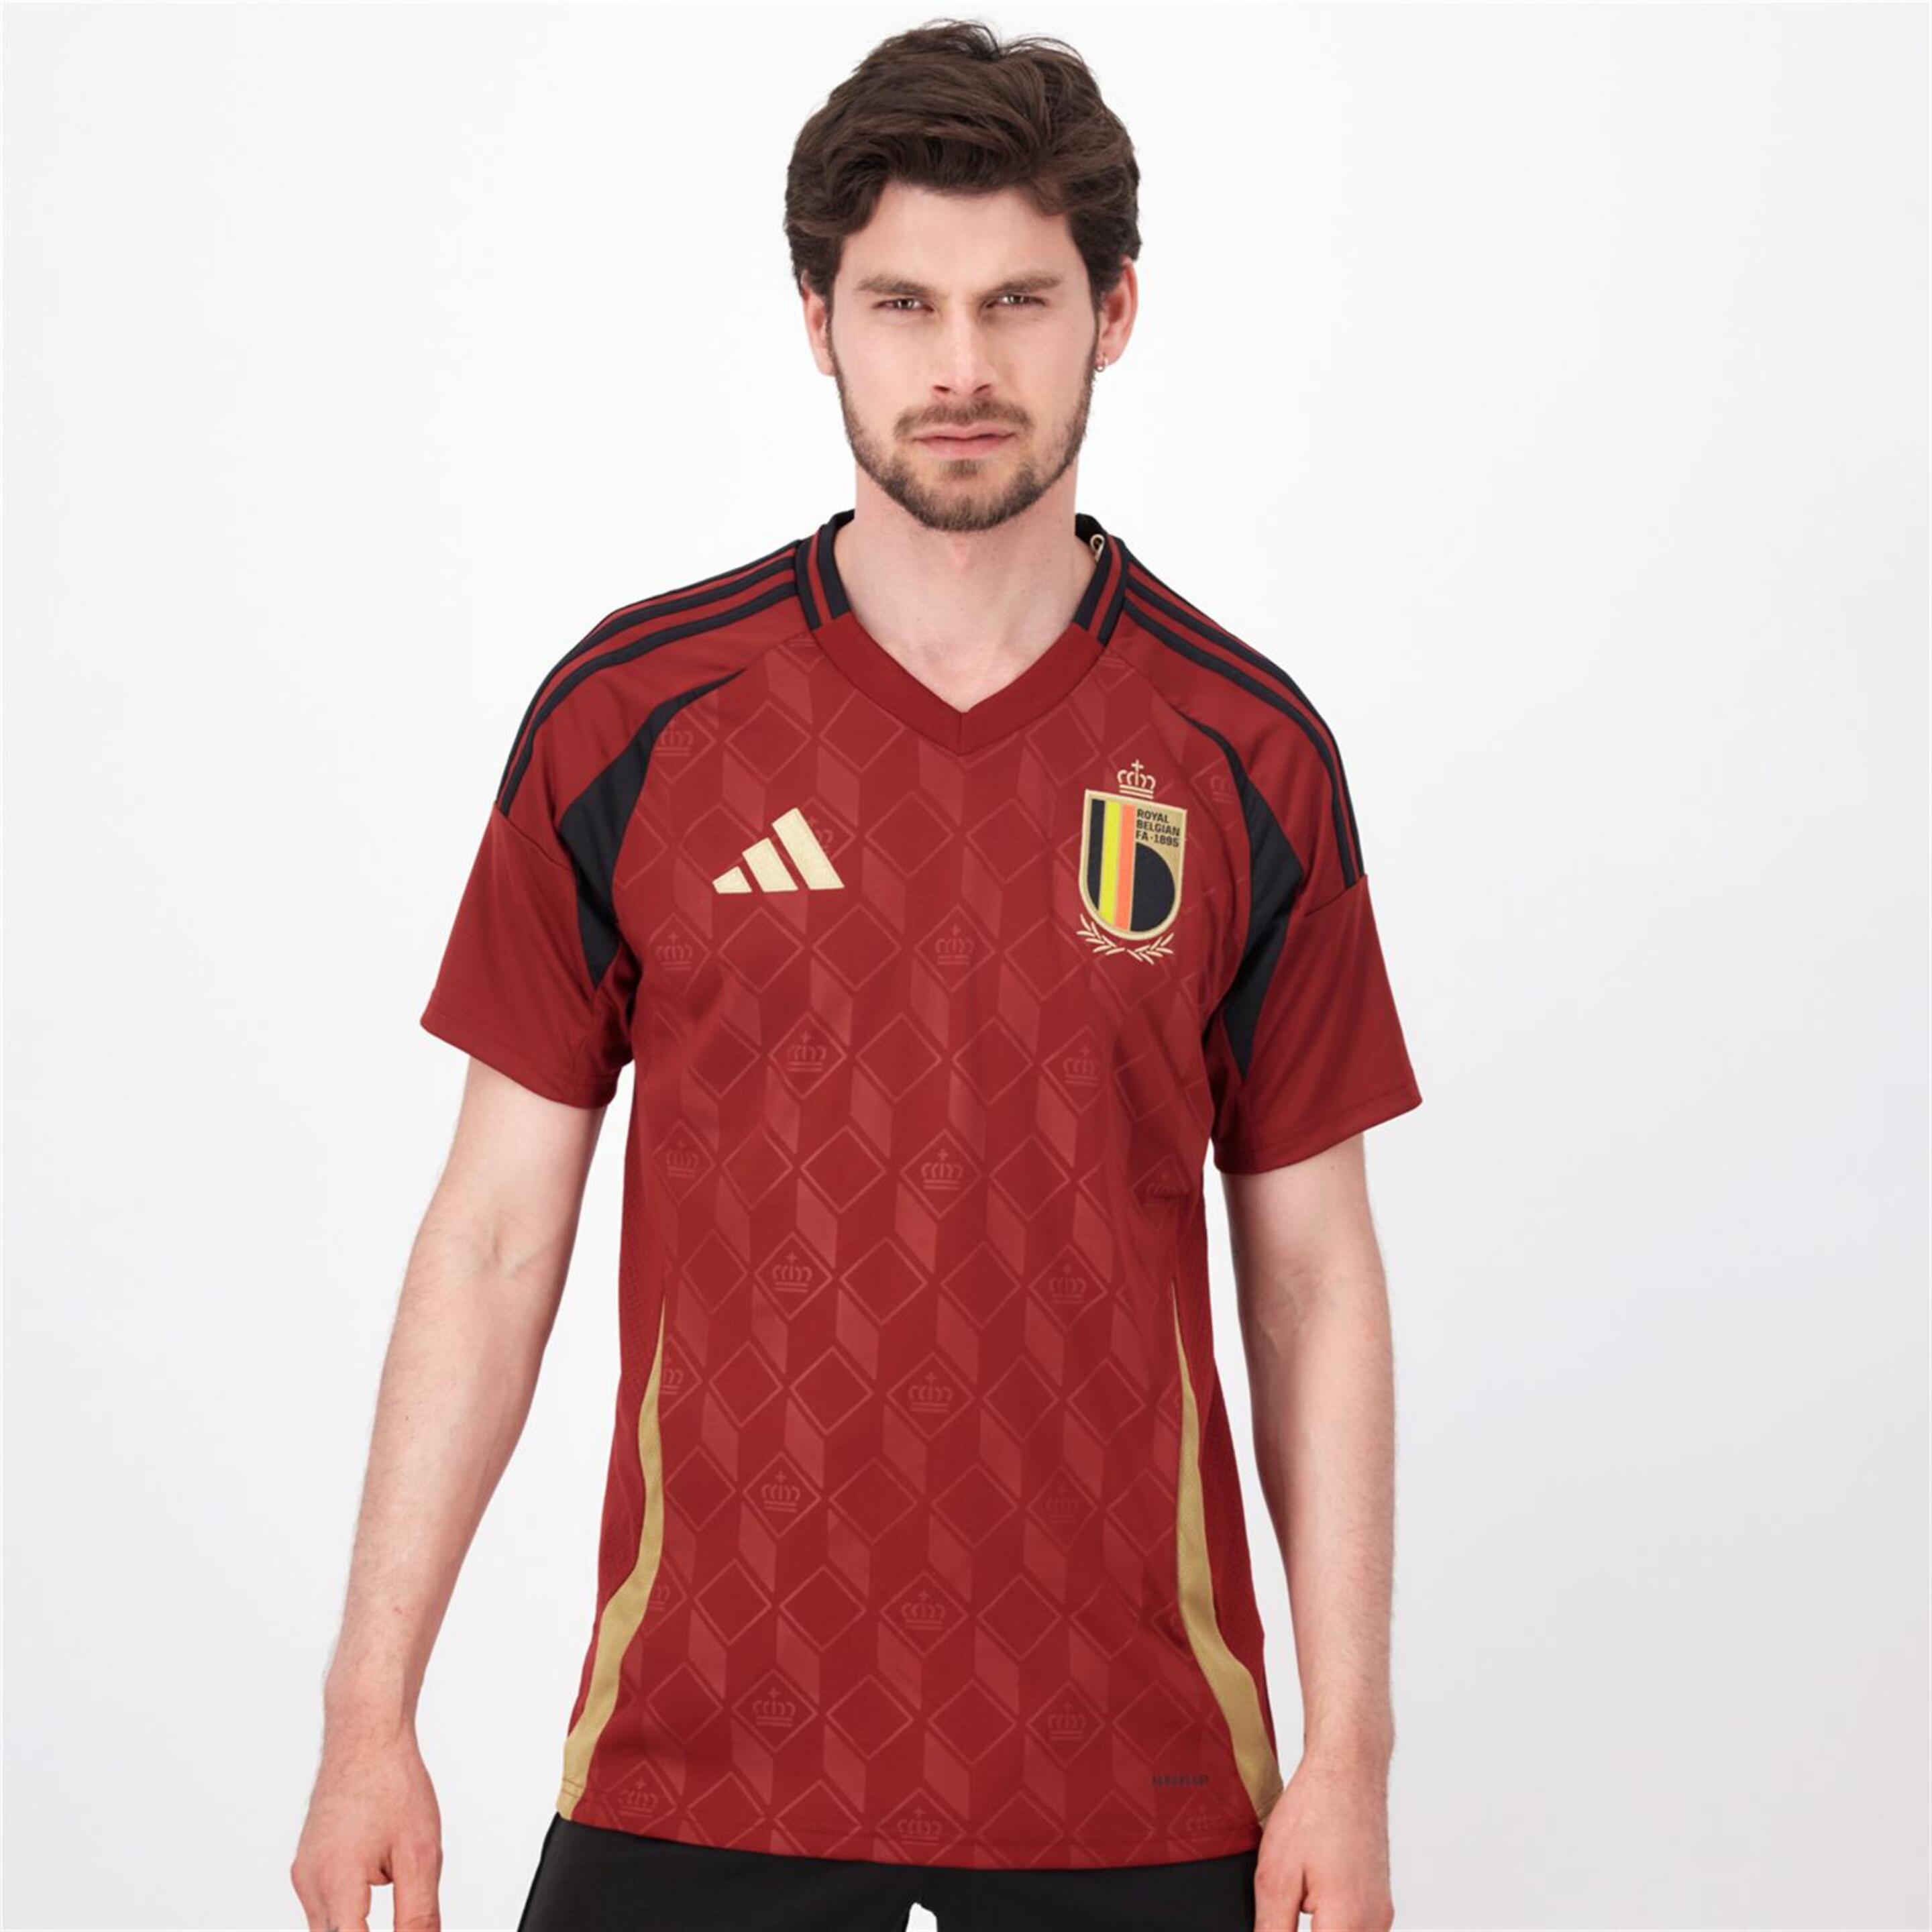 Camiseta Bélgica 1ª Equip. - rojo - Fútbol Hombre